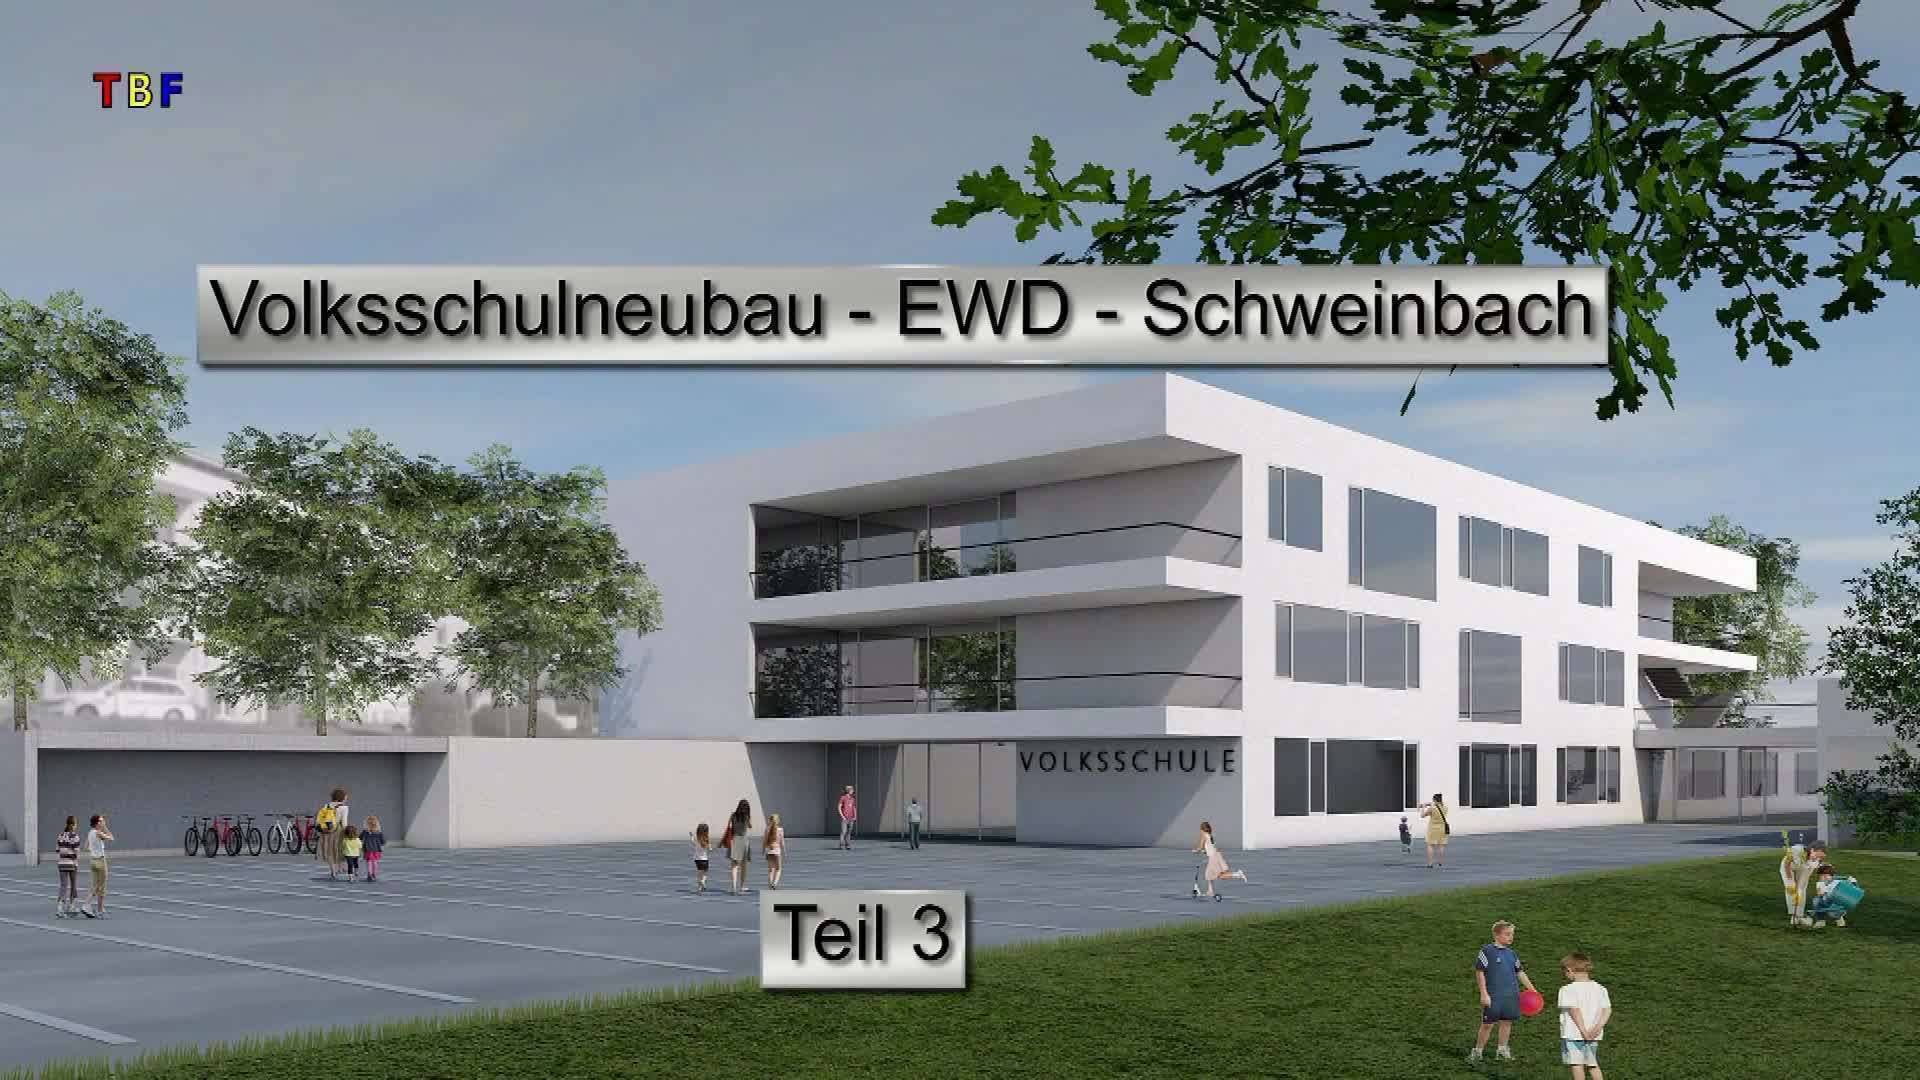 Volksschulneubau EWD-Schweinbach Teil 3